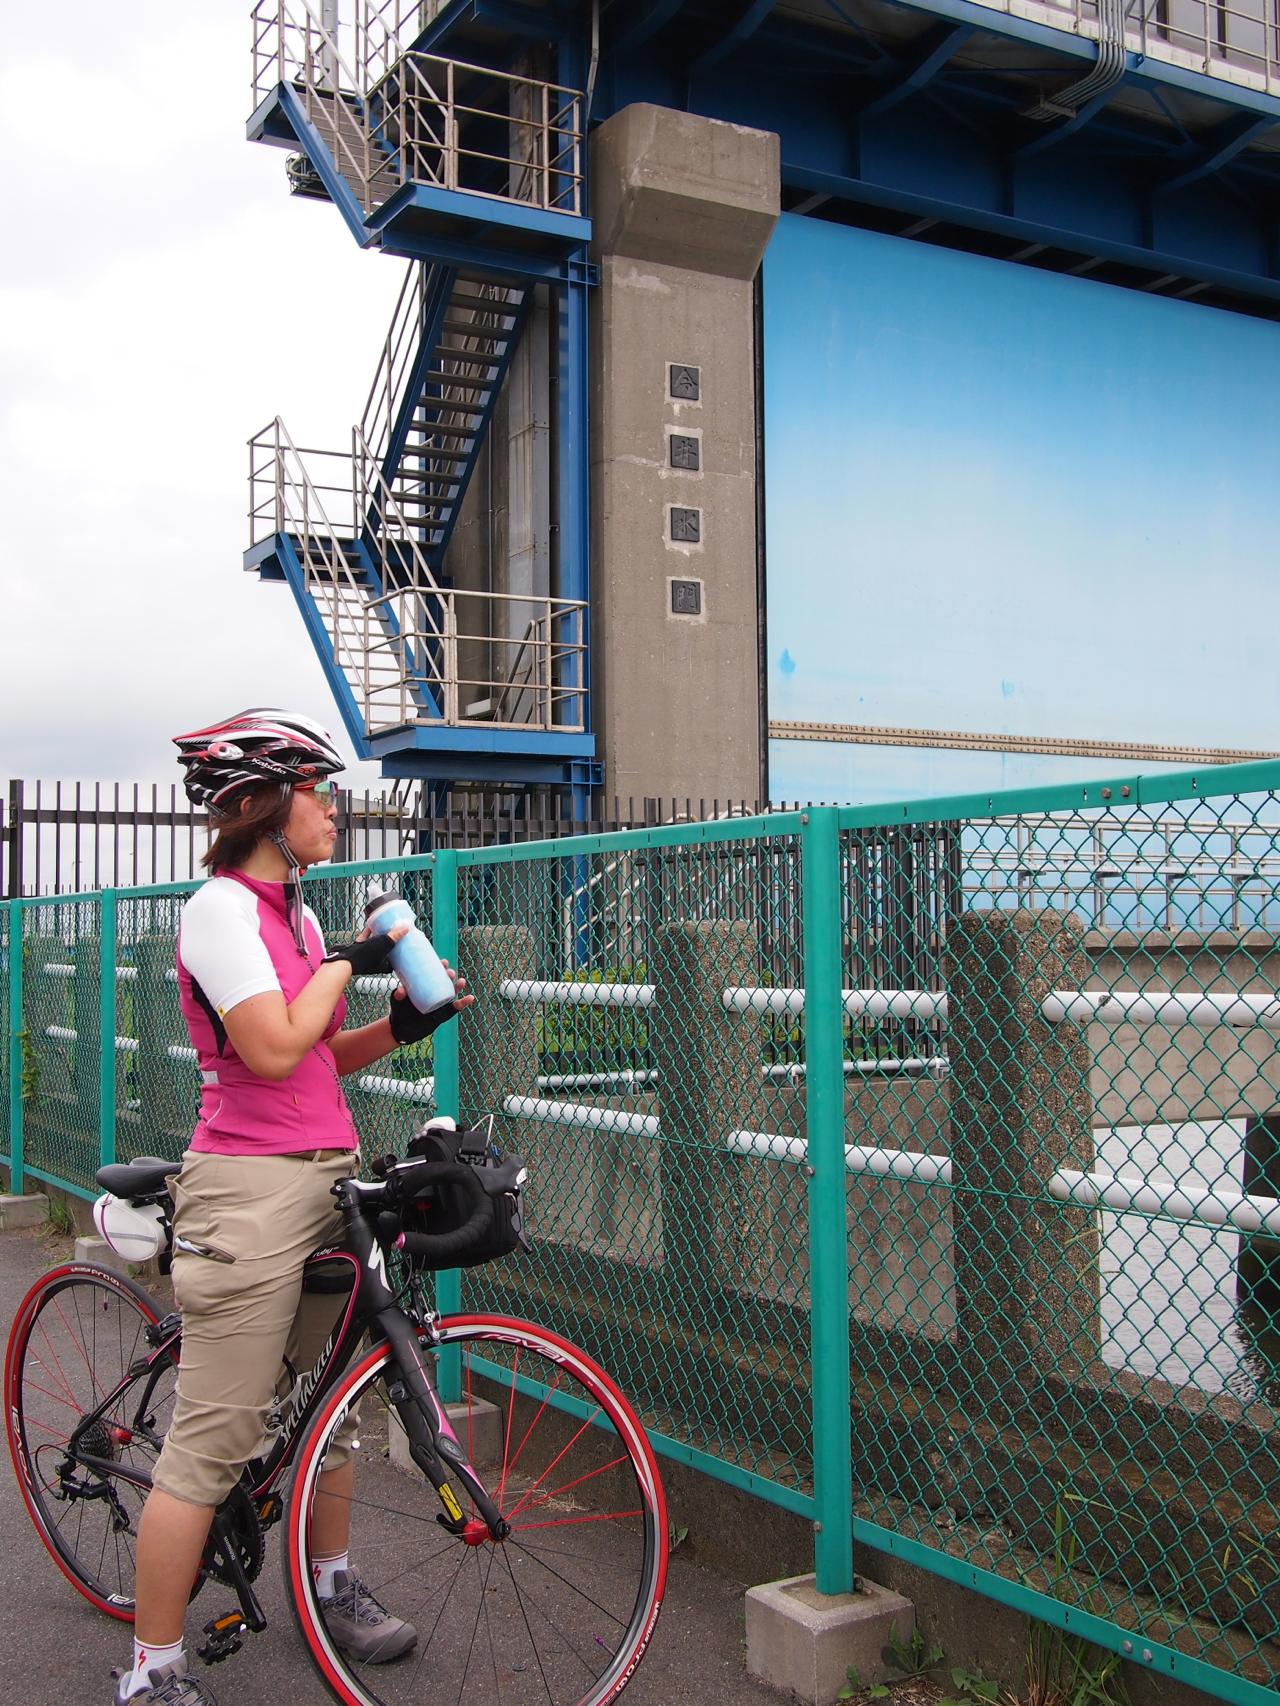 東京周辺自転車散歩10葛西臨海公園と親水公園 40代からのロードバイク40代からのロードバイク